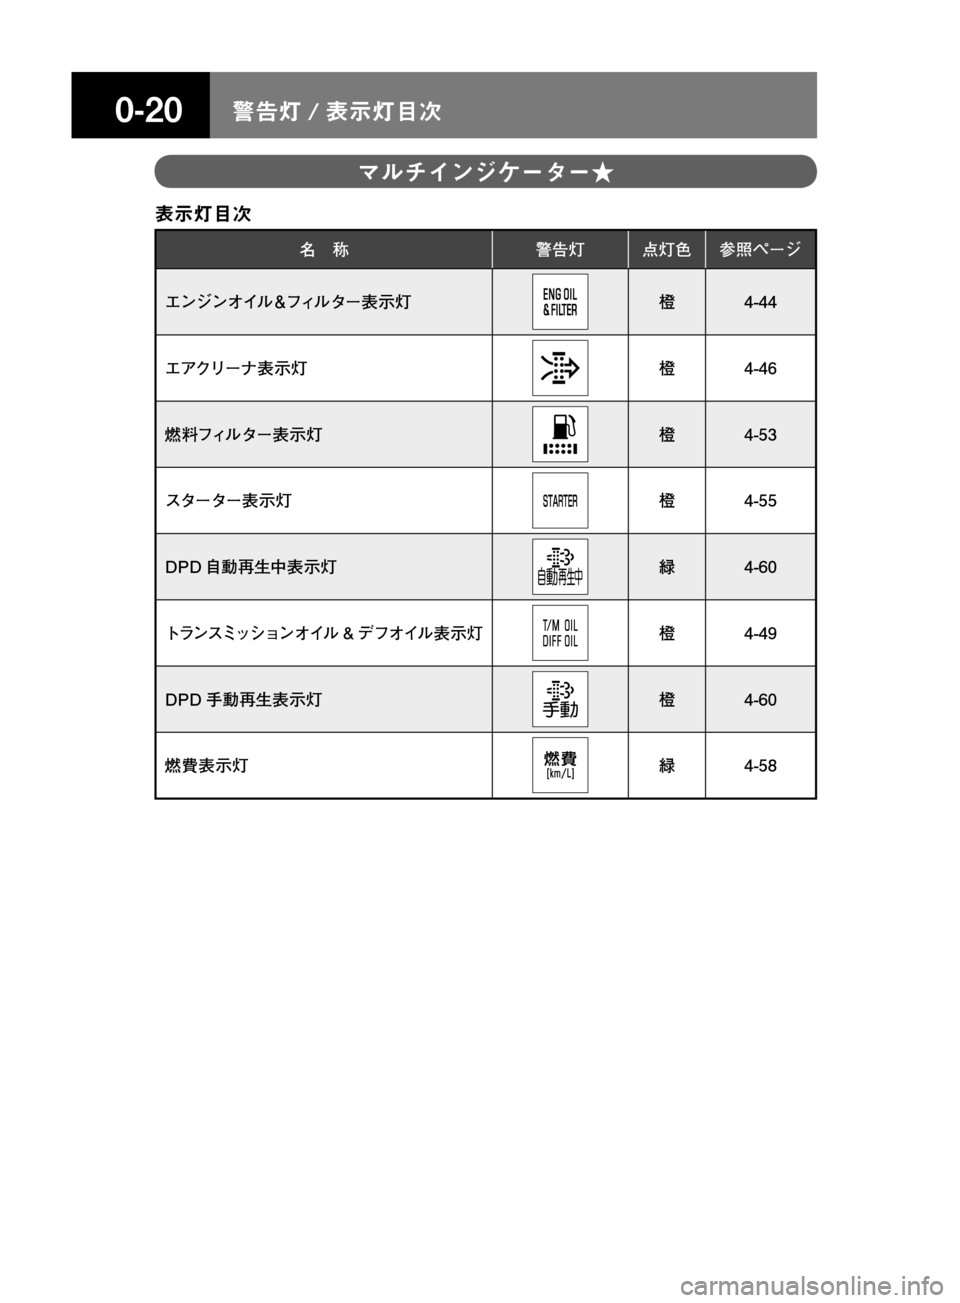 MAZDA MODEL TITAN 2013  タイタン｜取扱説明書 (in Japanese) ����/n � 
